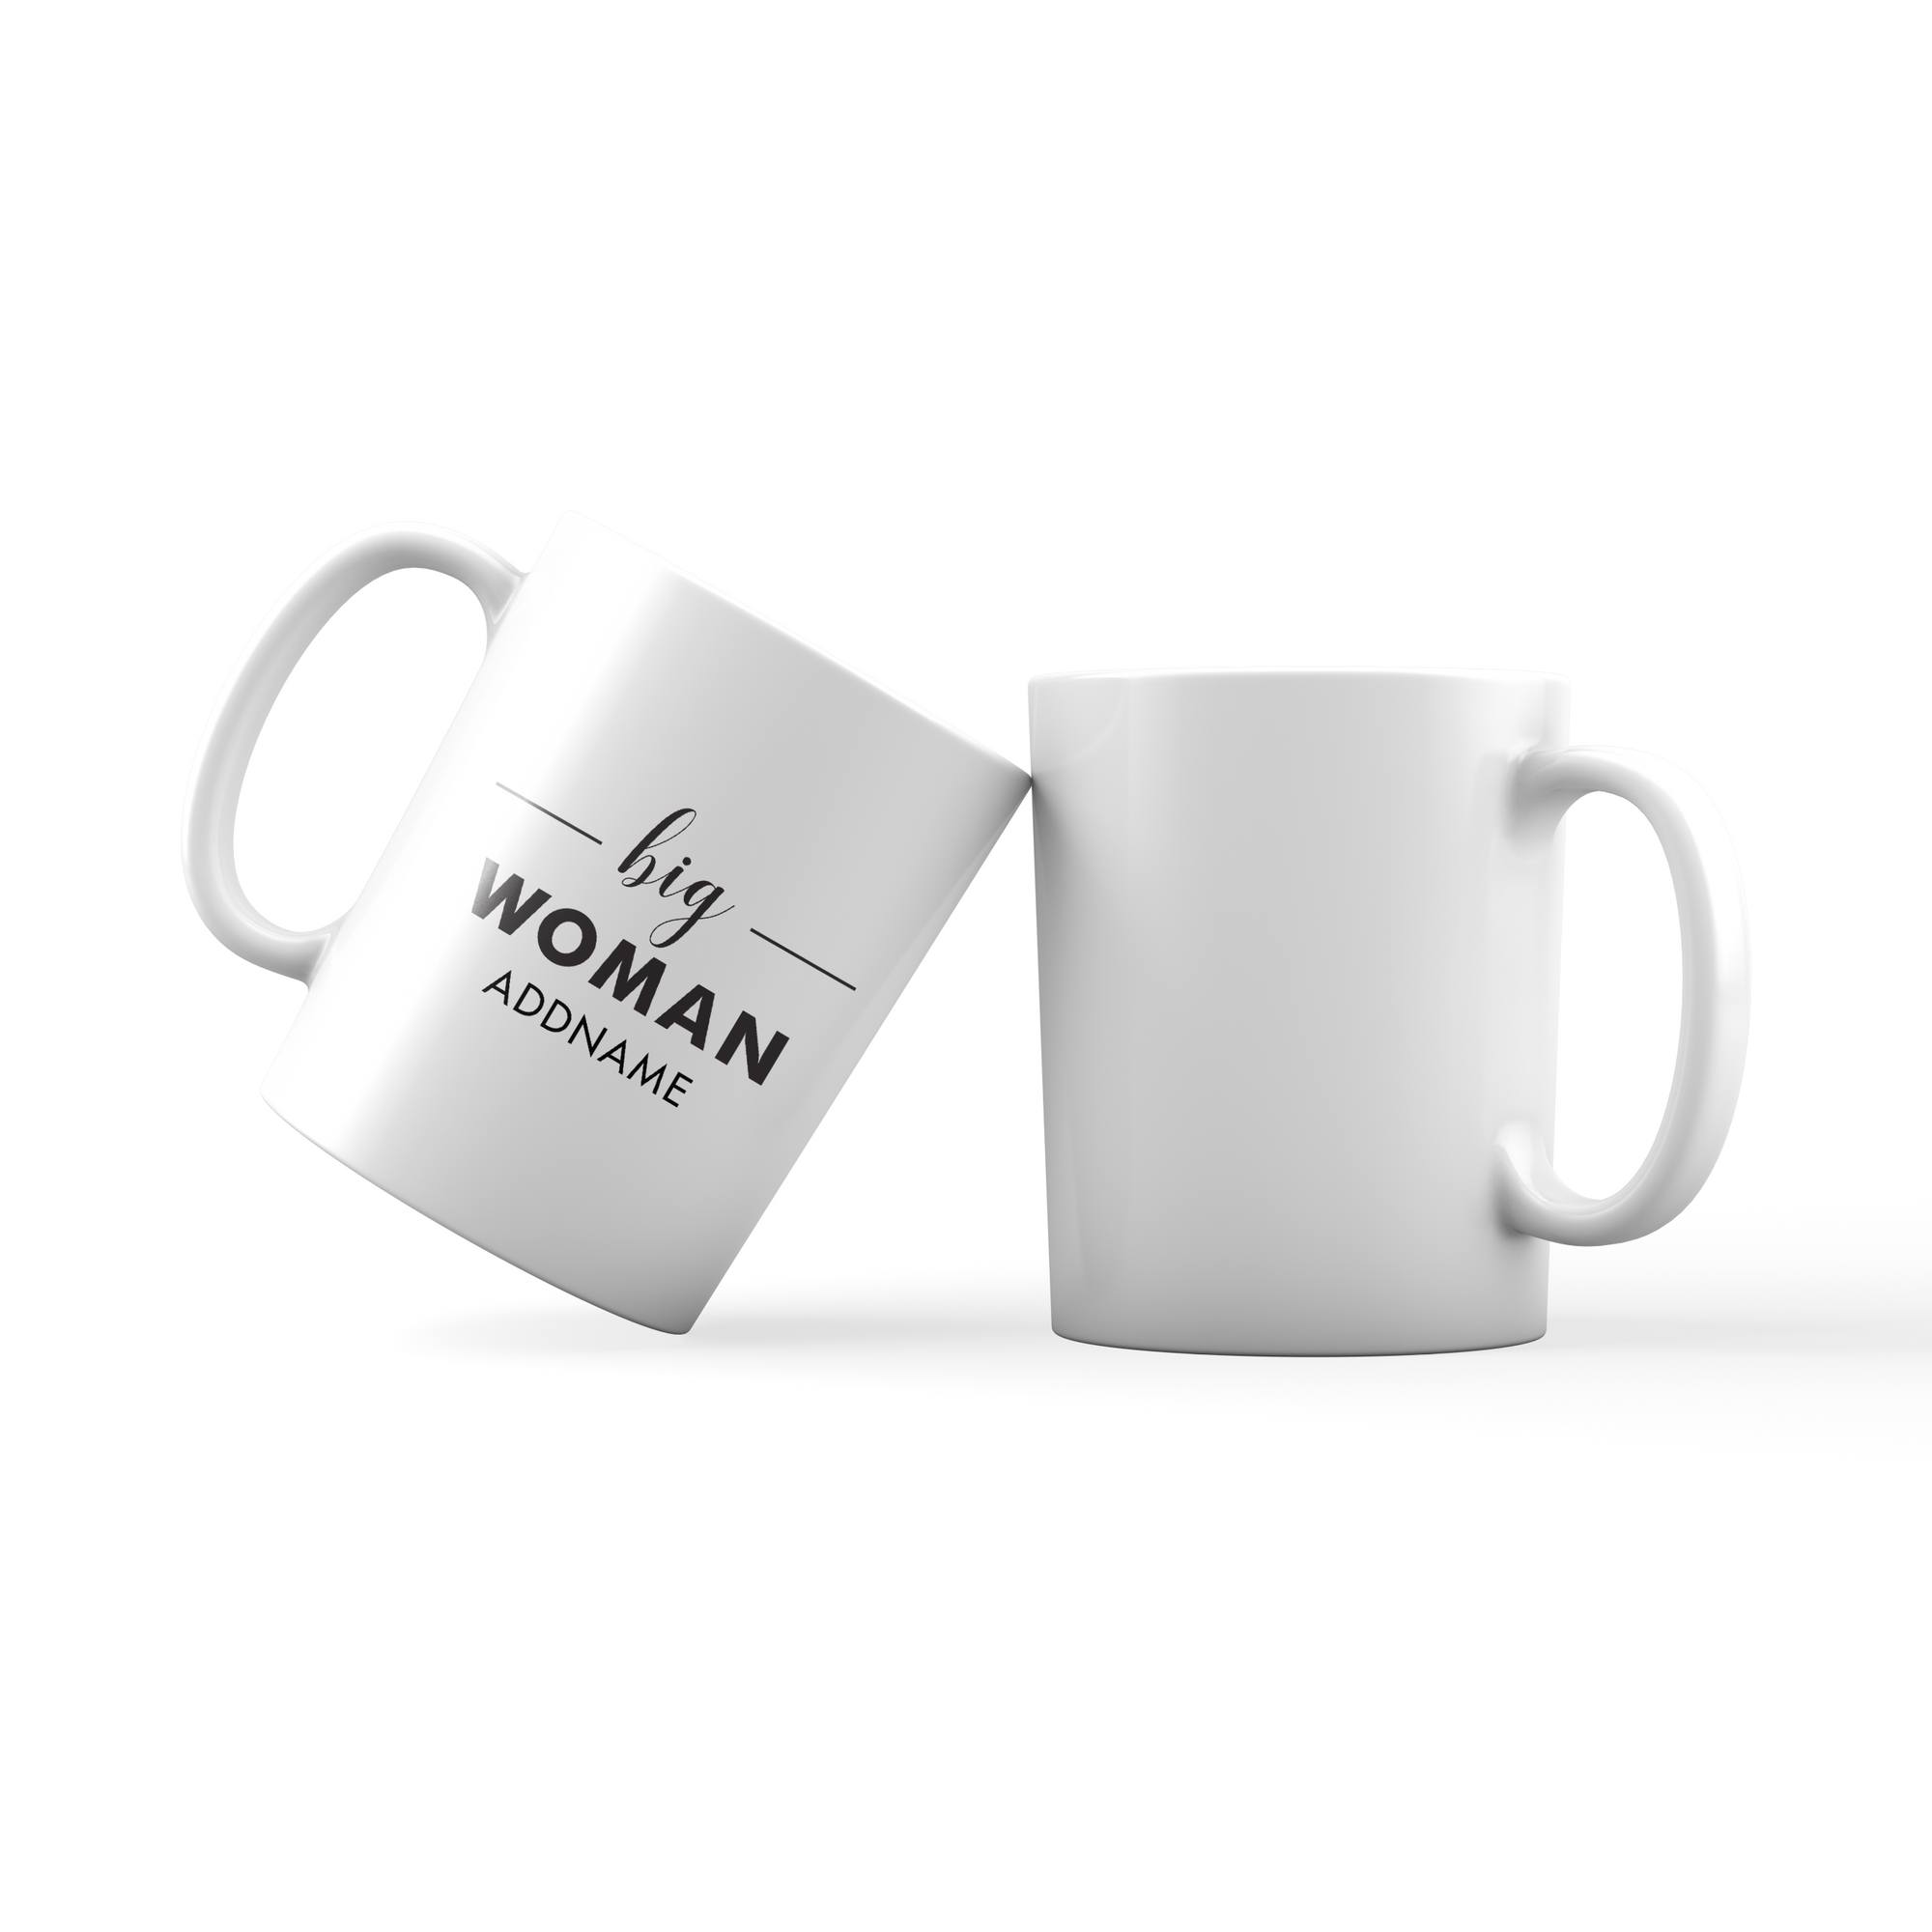 Big Woman Addname Mug